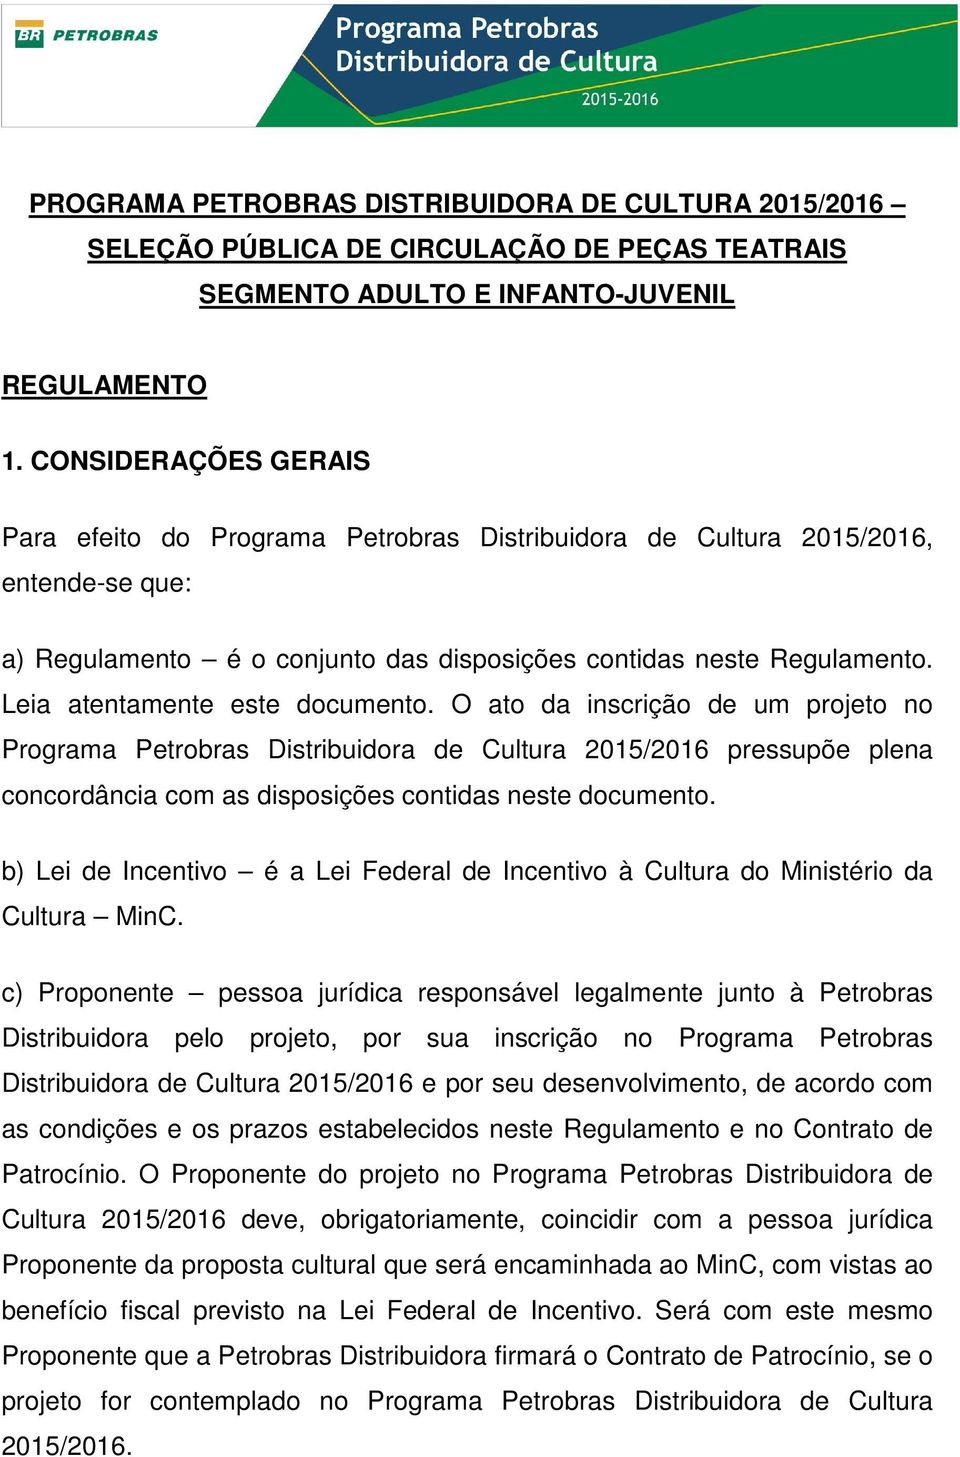 Leia atentamente este documento. O ato da inscrição de um projeto no Programa Petrobras Distribuidora de Cultura 2015/2016 pressupõe plena concordância com as disposições contidas neste documento.